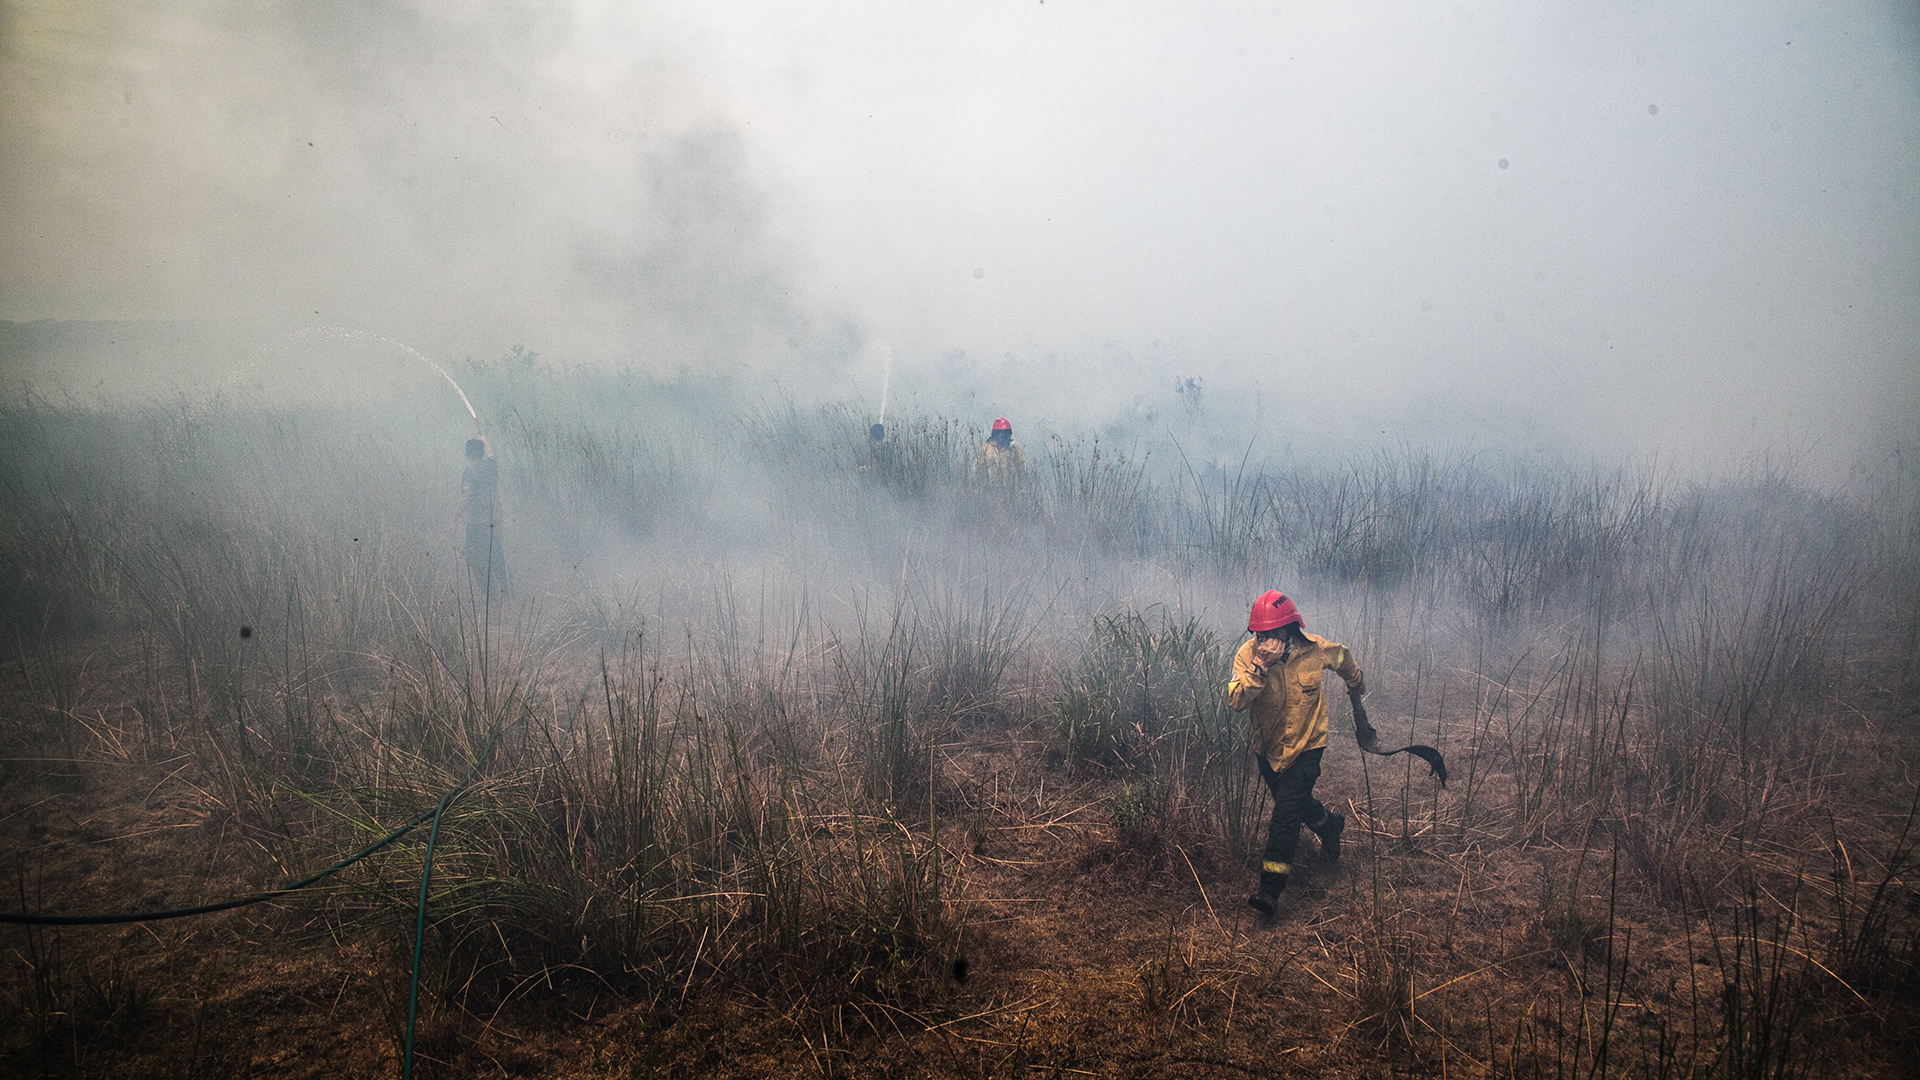 En février, des incendies de forêt alimentés par une grave sécheresse ont détruit des forêts, des prairies et des zones humides dans le nord-est de l'Argentine, brûlant environ 40 % du parc national d'Ibera.